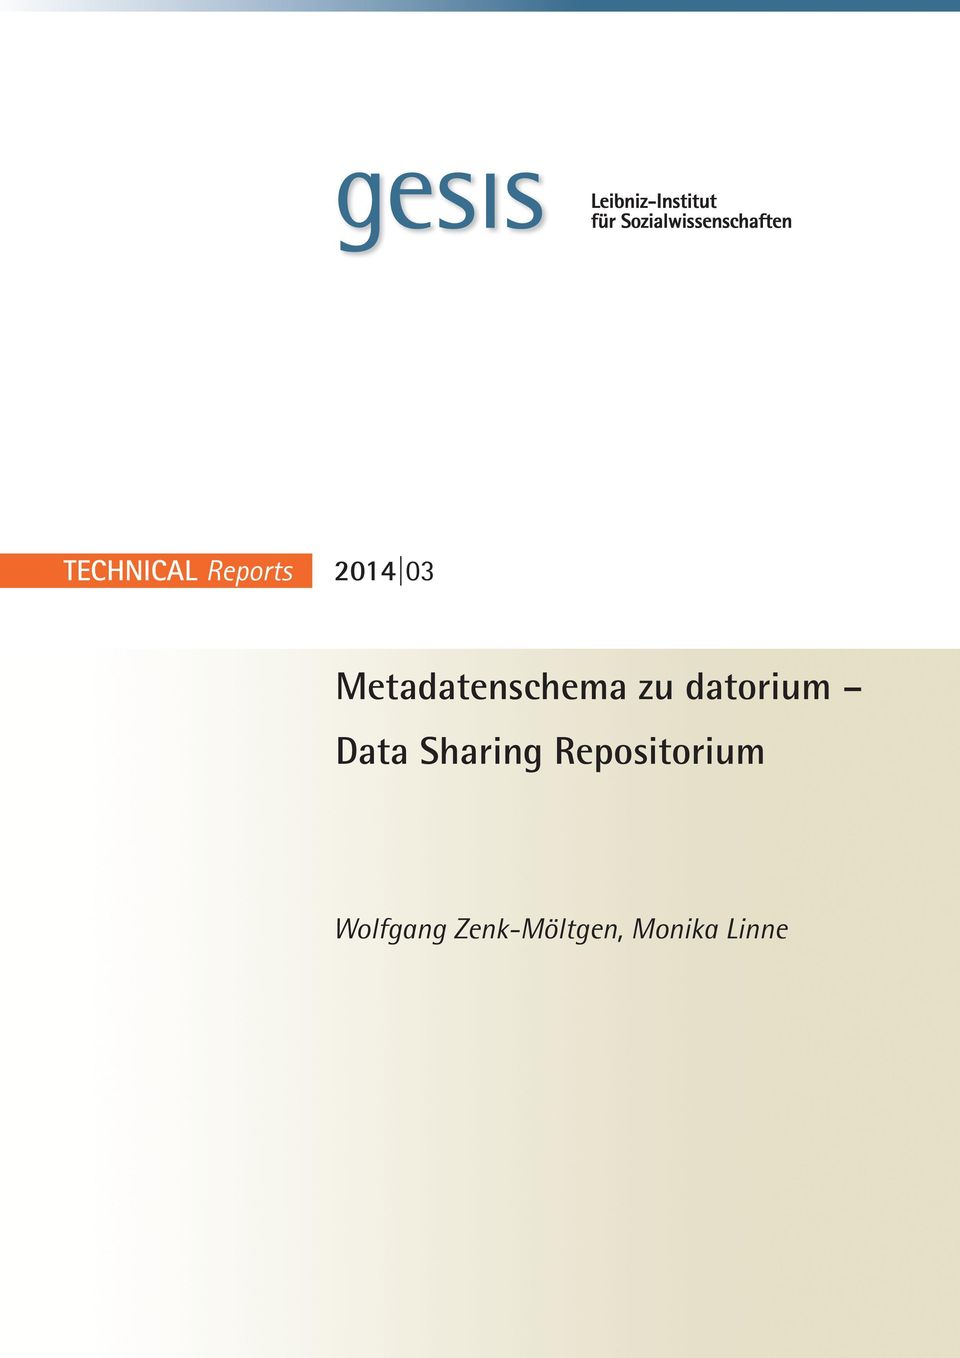 Data Sharing Repositorium